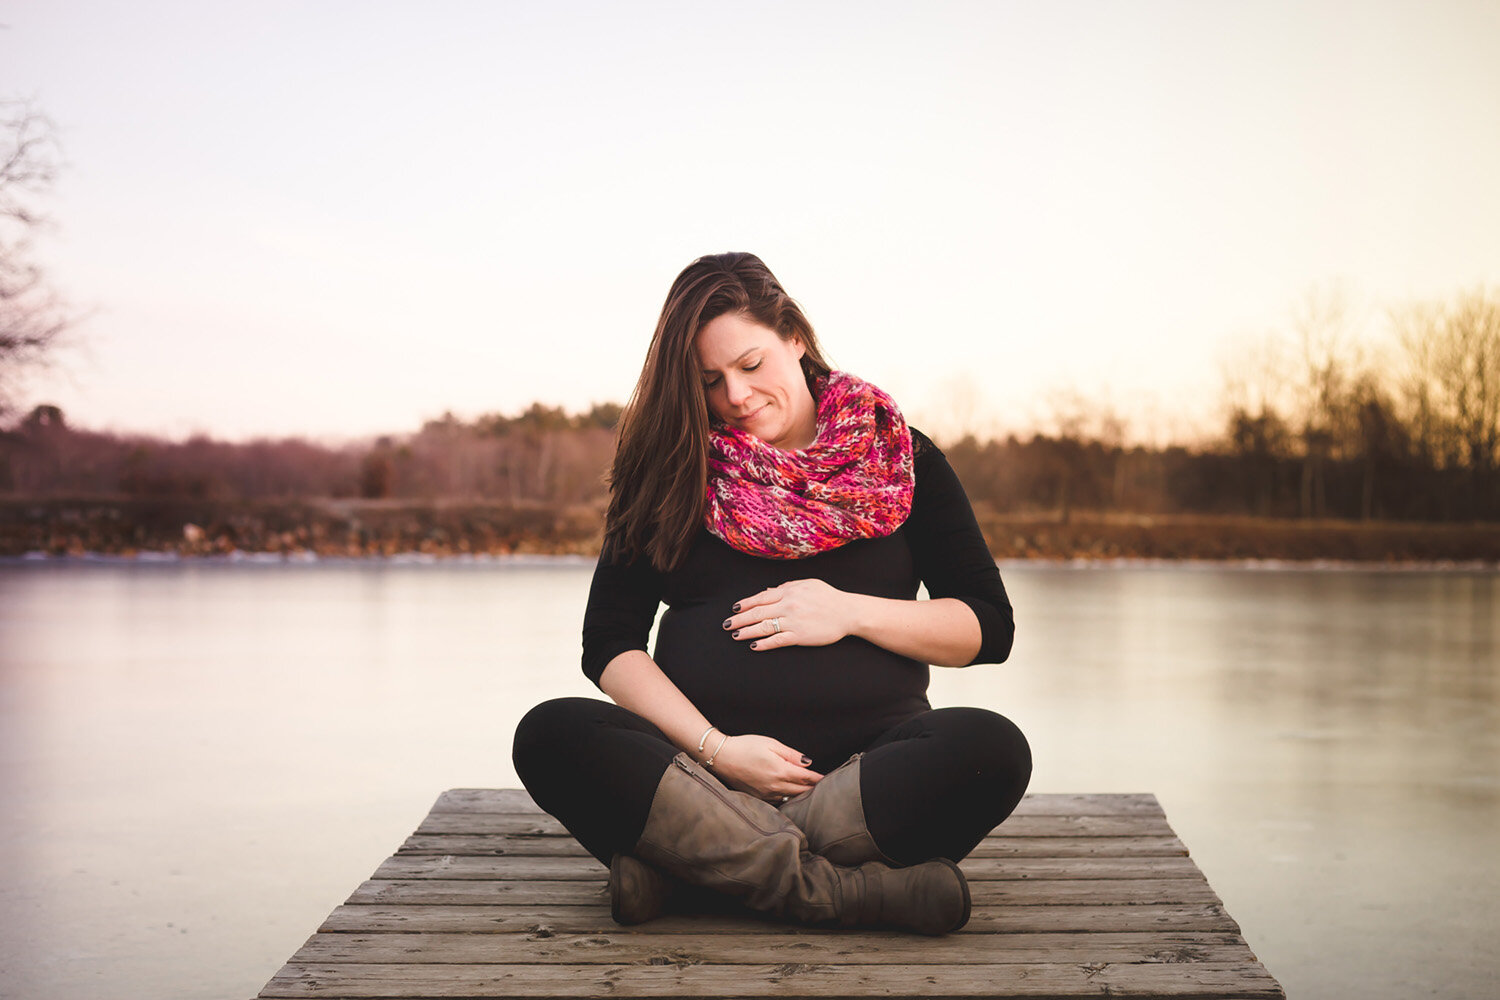 pregnancy photos on pier next to lake